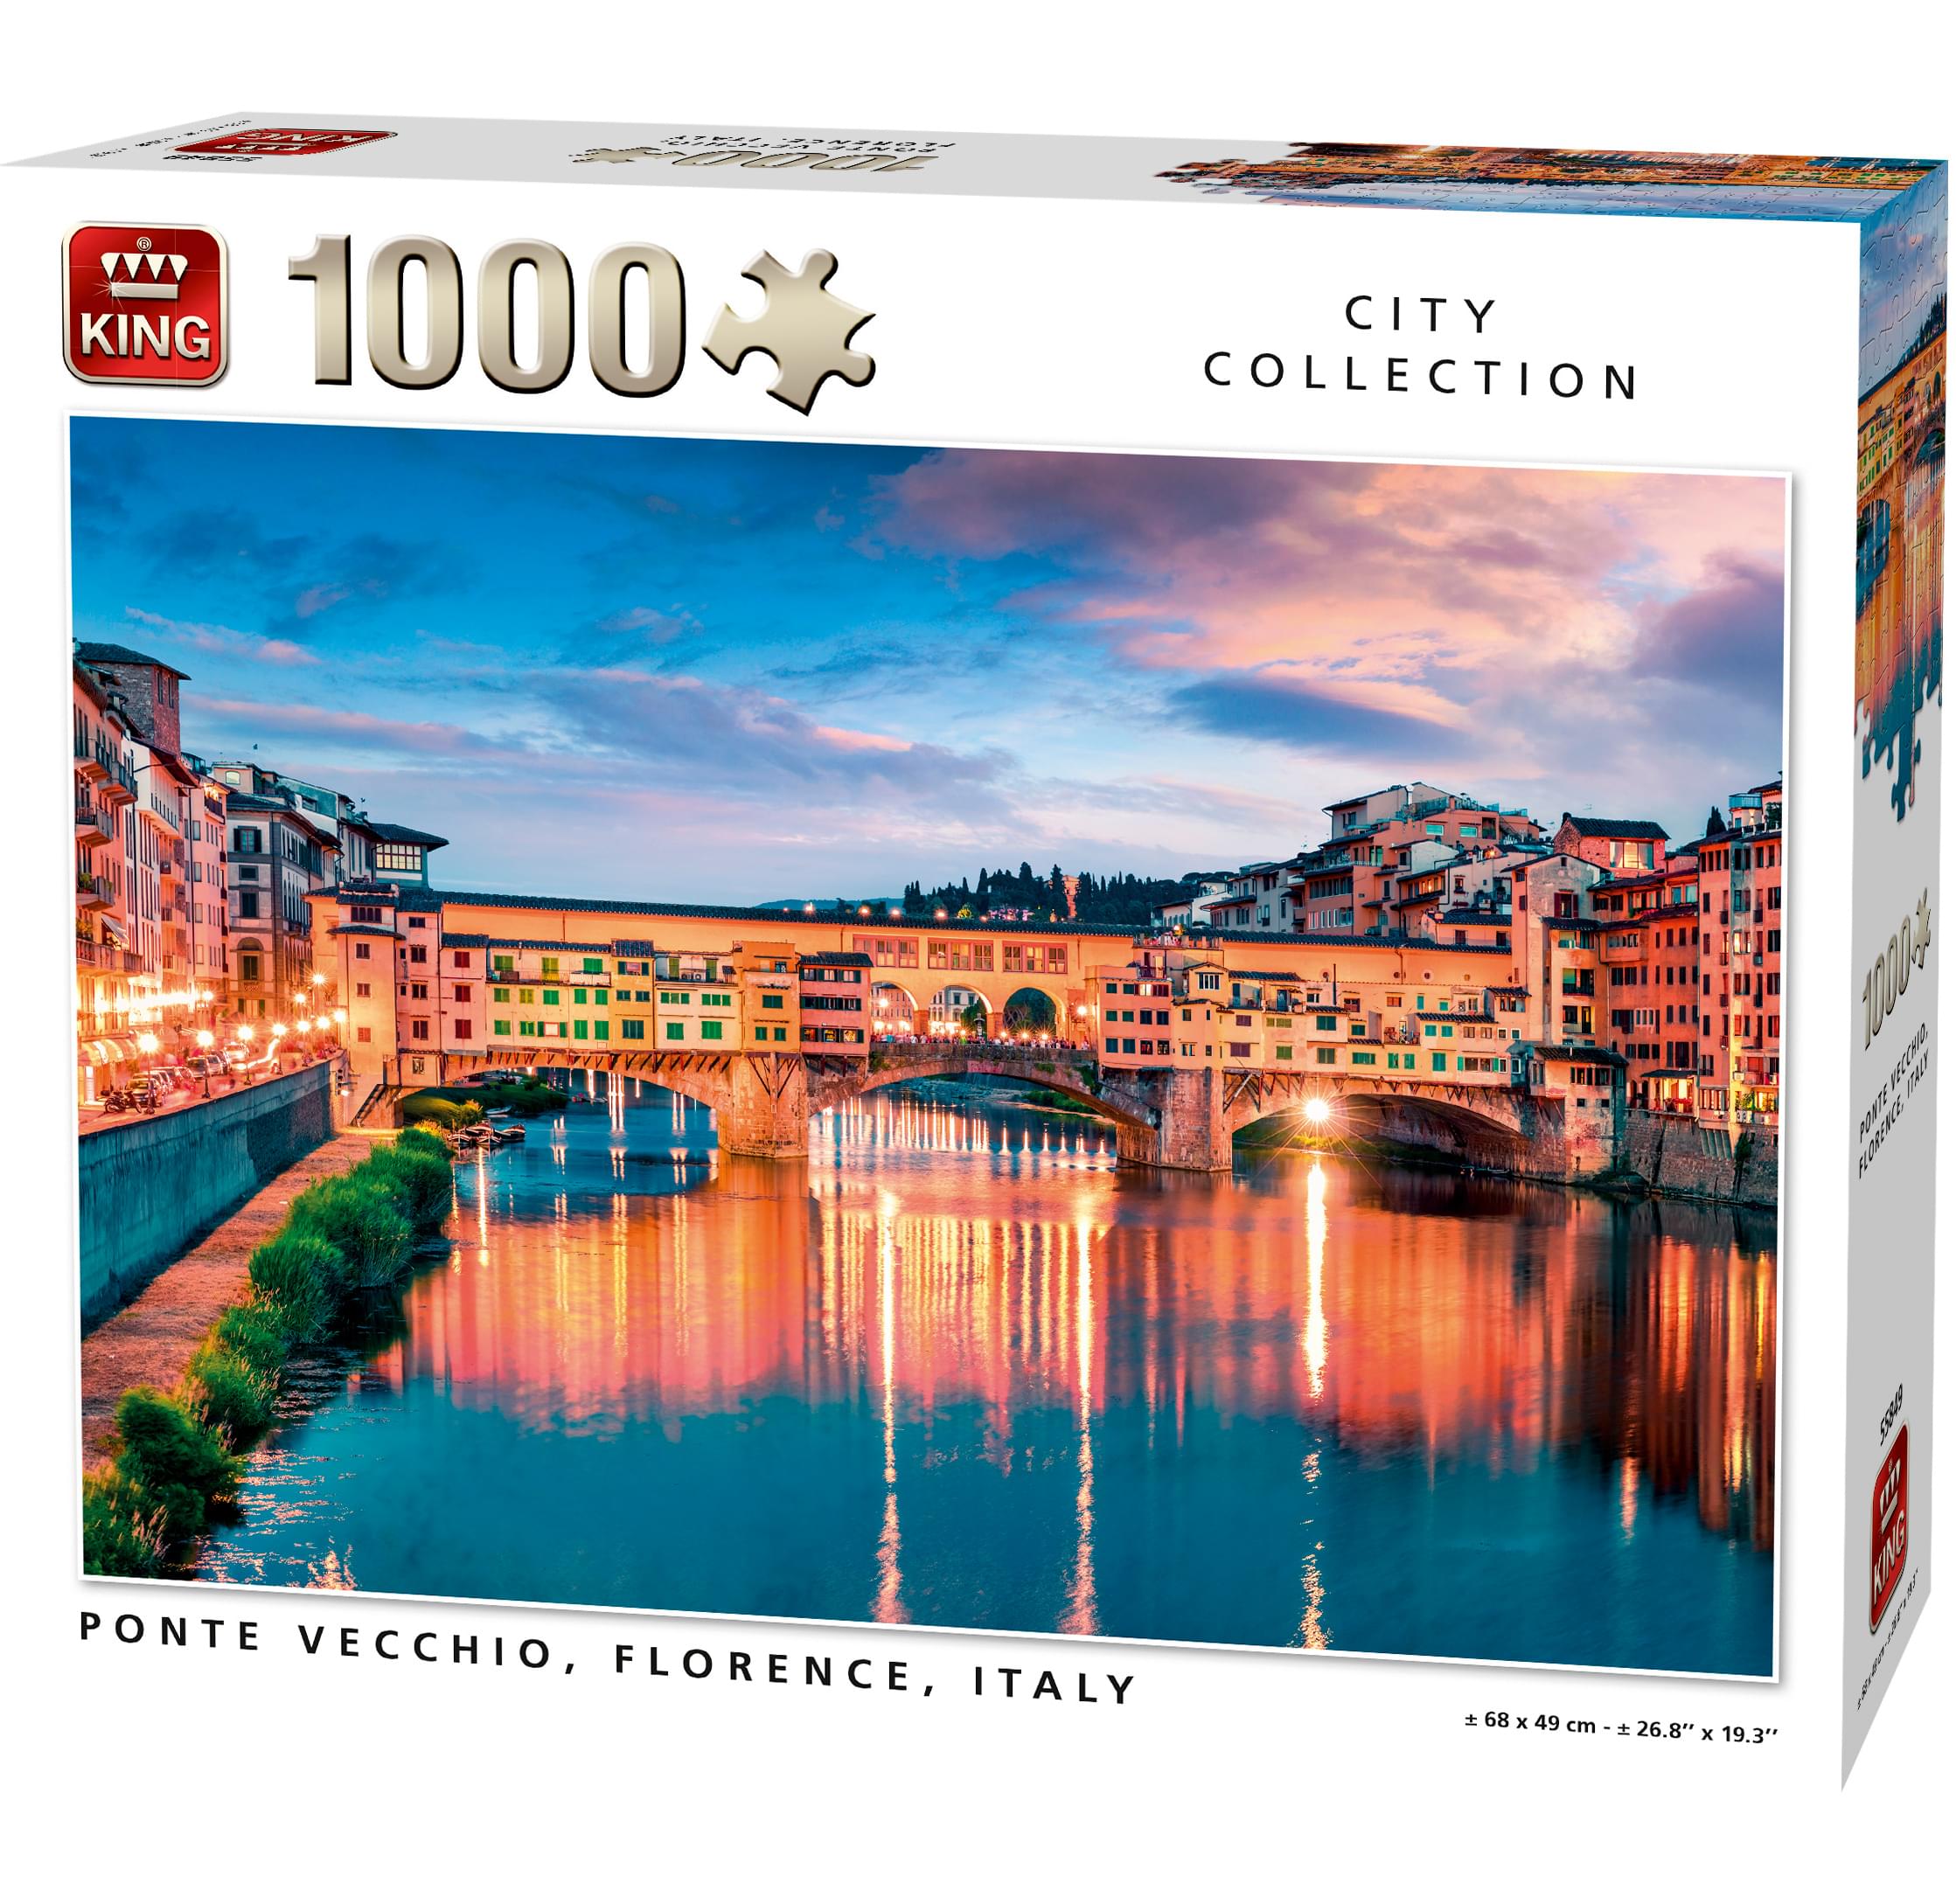 Puzzle Ponte Vecchio Italy at Night 1000pcs